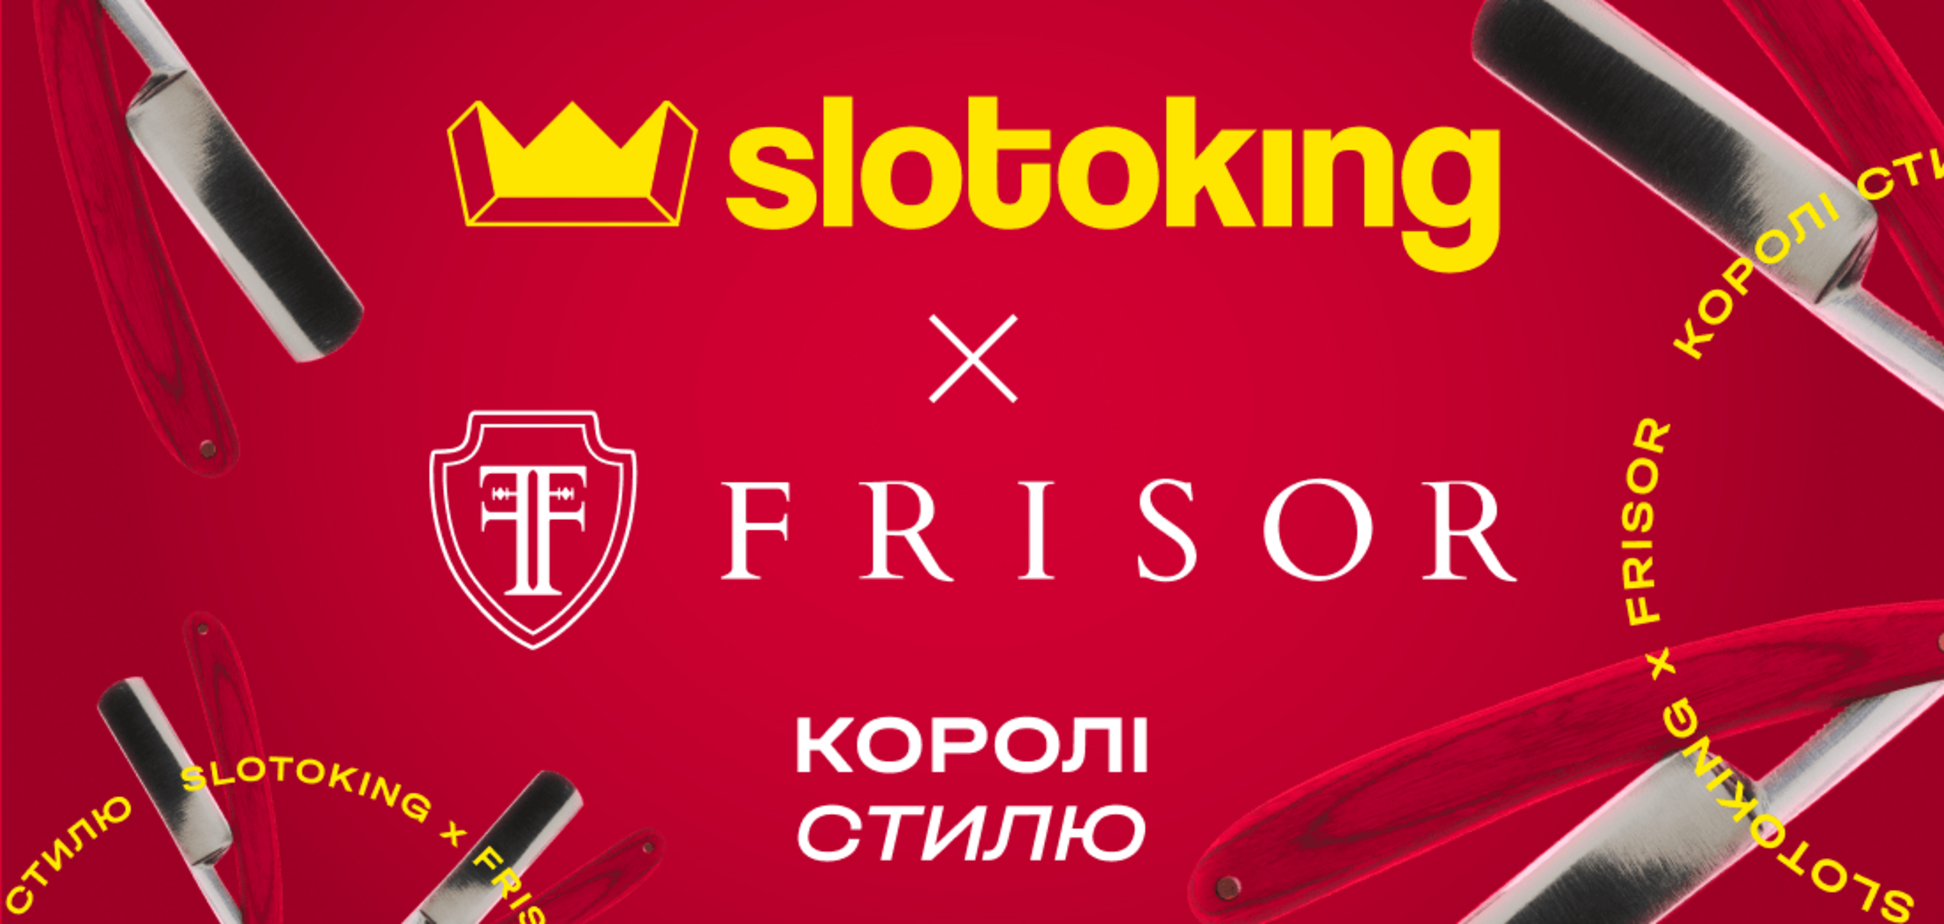 Украинское лицензионное онлайн-казино slotoking начало сотрудничество с барбершопом Frisor